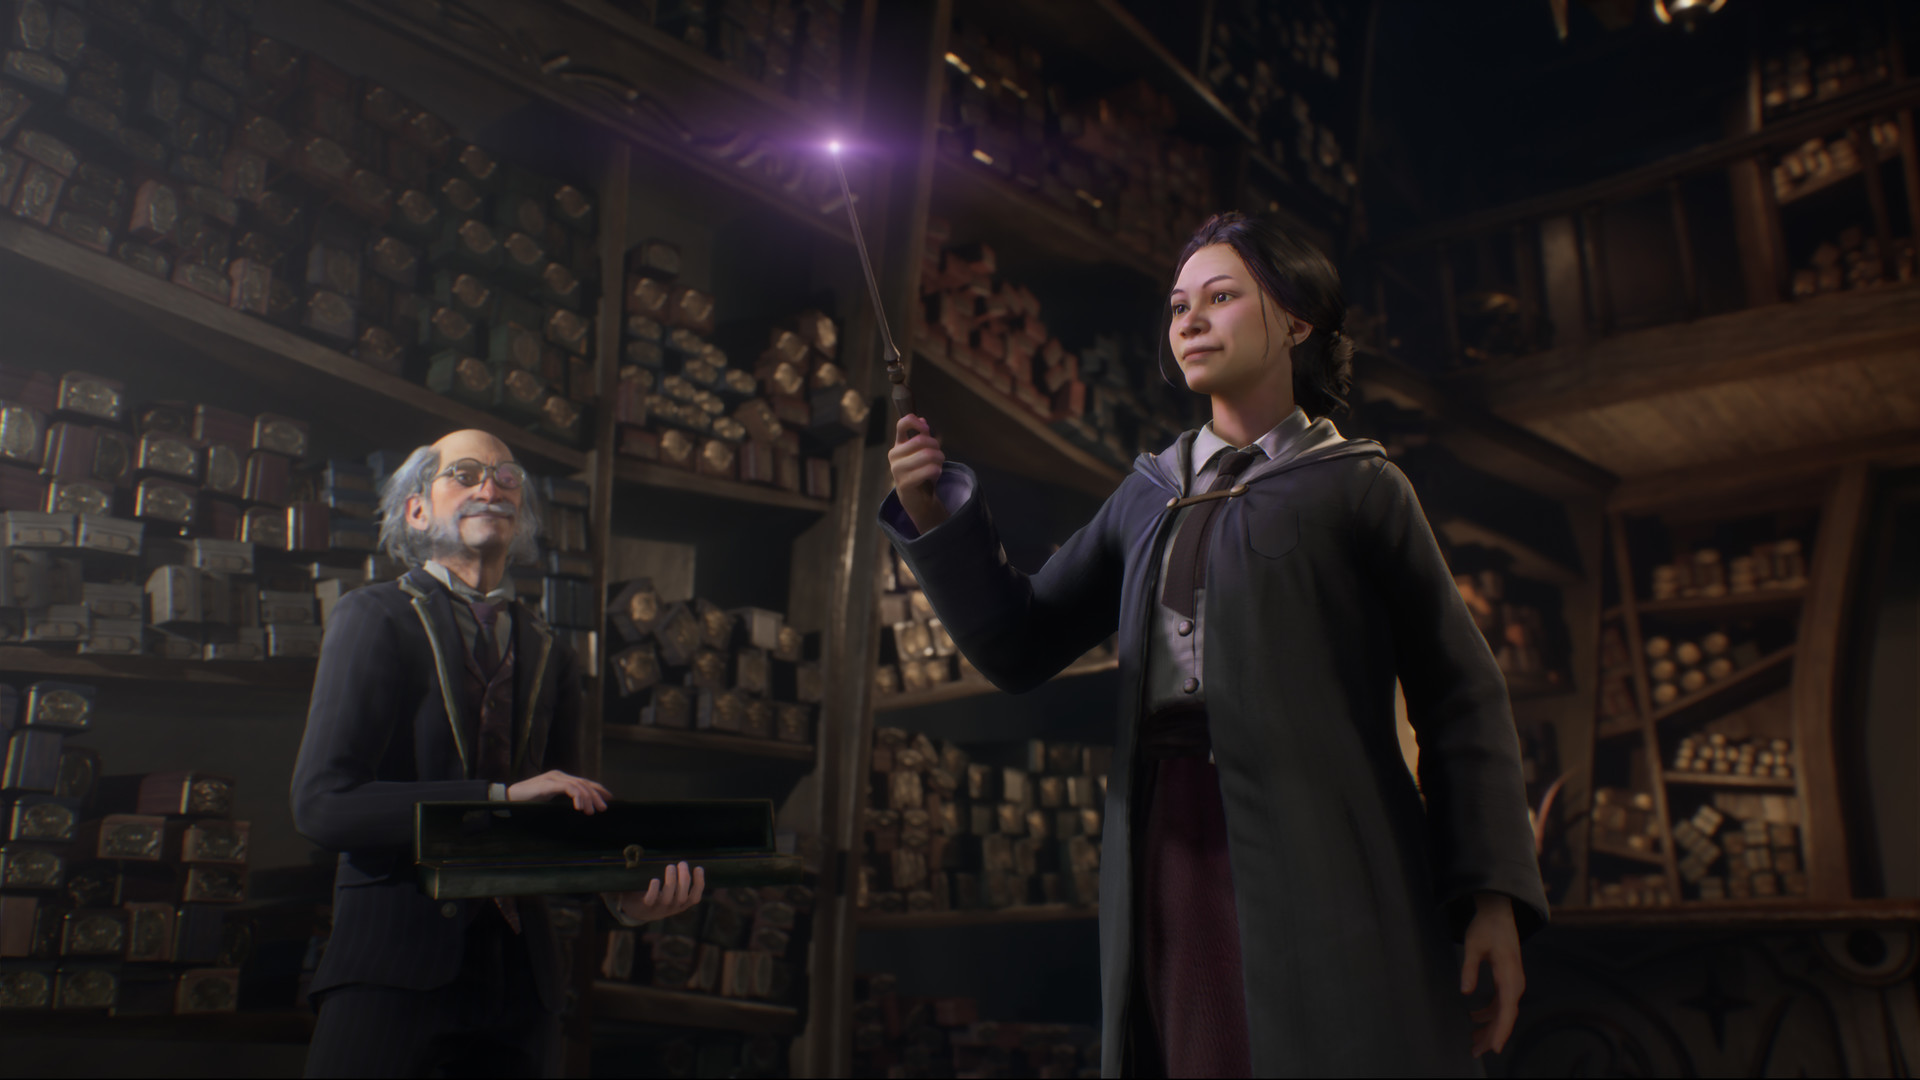 Hogwarts Legacy: veja os requisitos necessários para jogar no PC